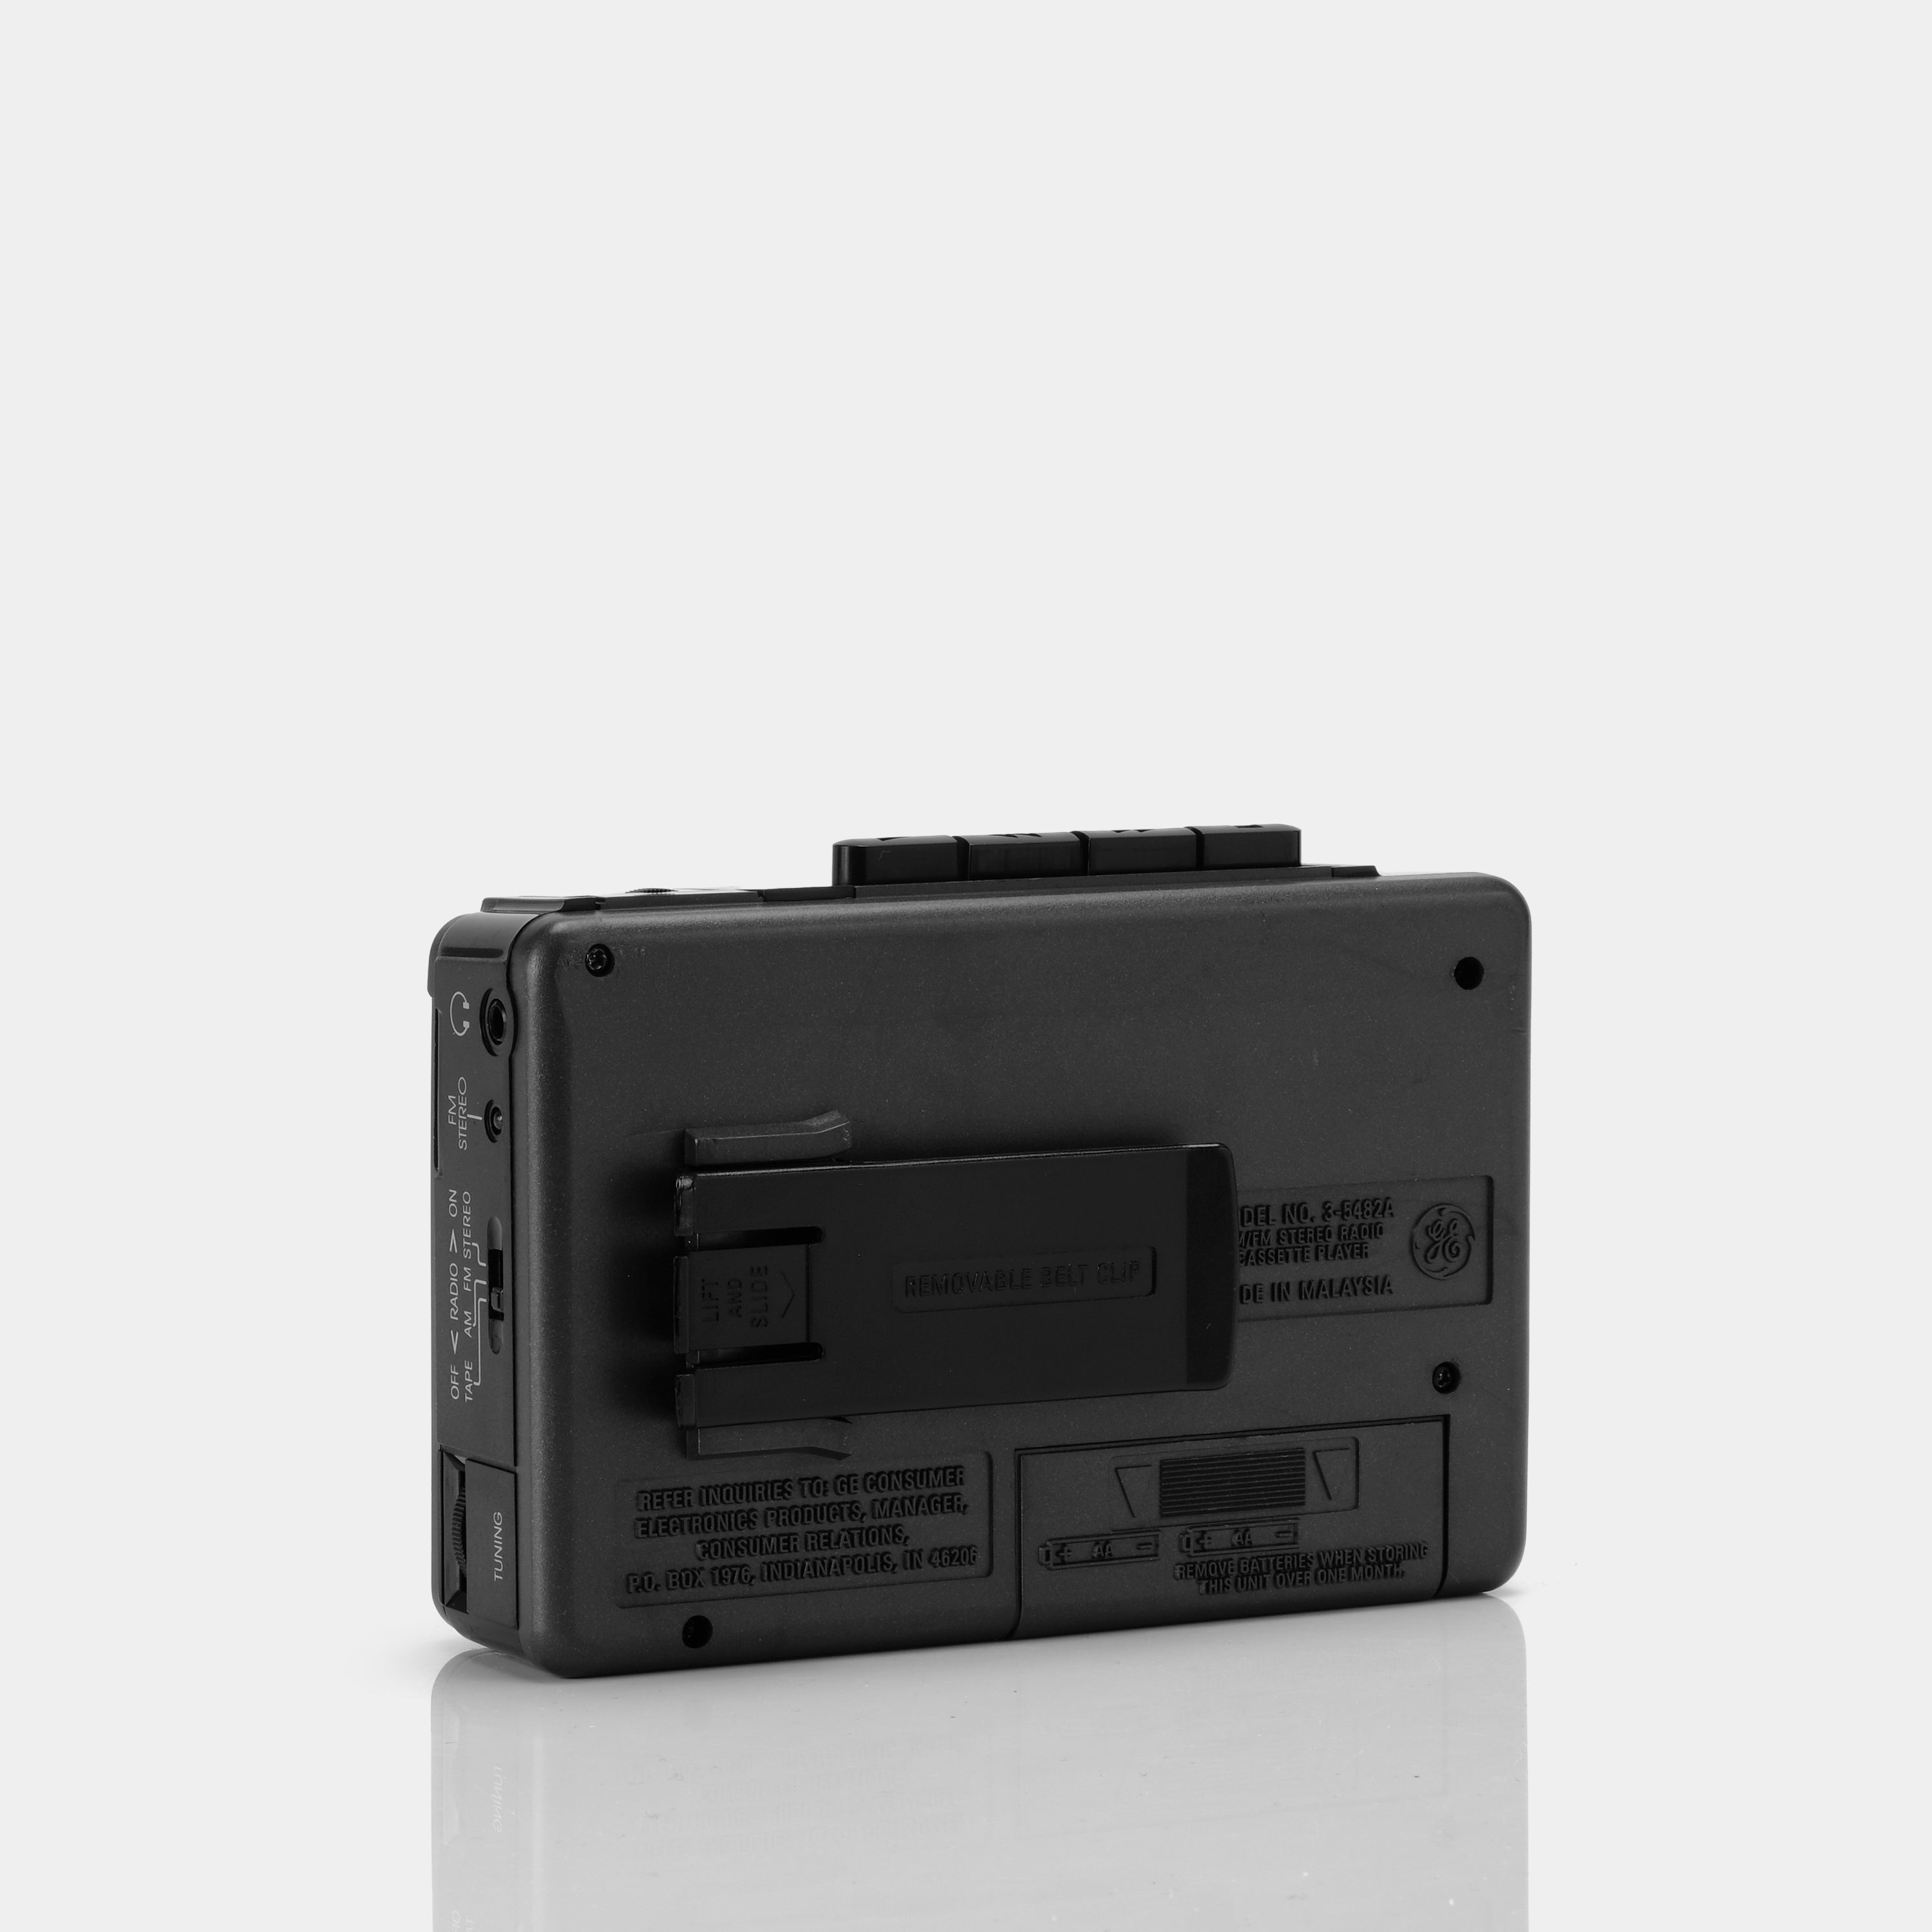 General Electric Model 3-5482A AM/FM Portable Cassette Player